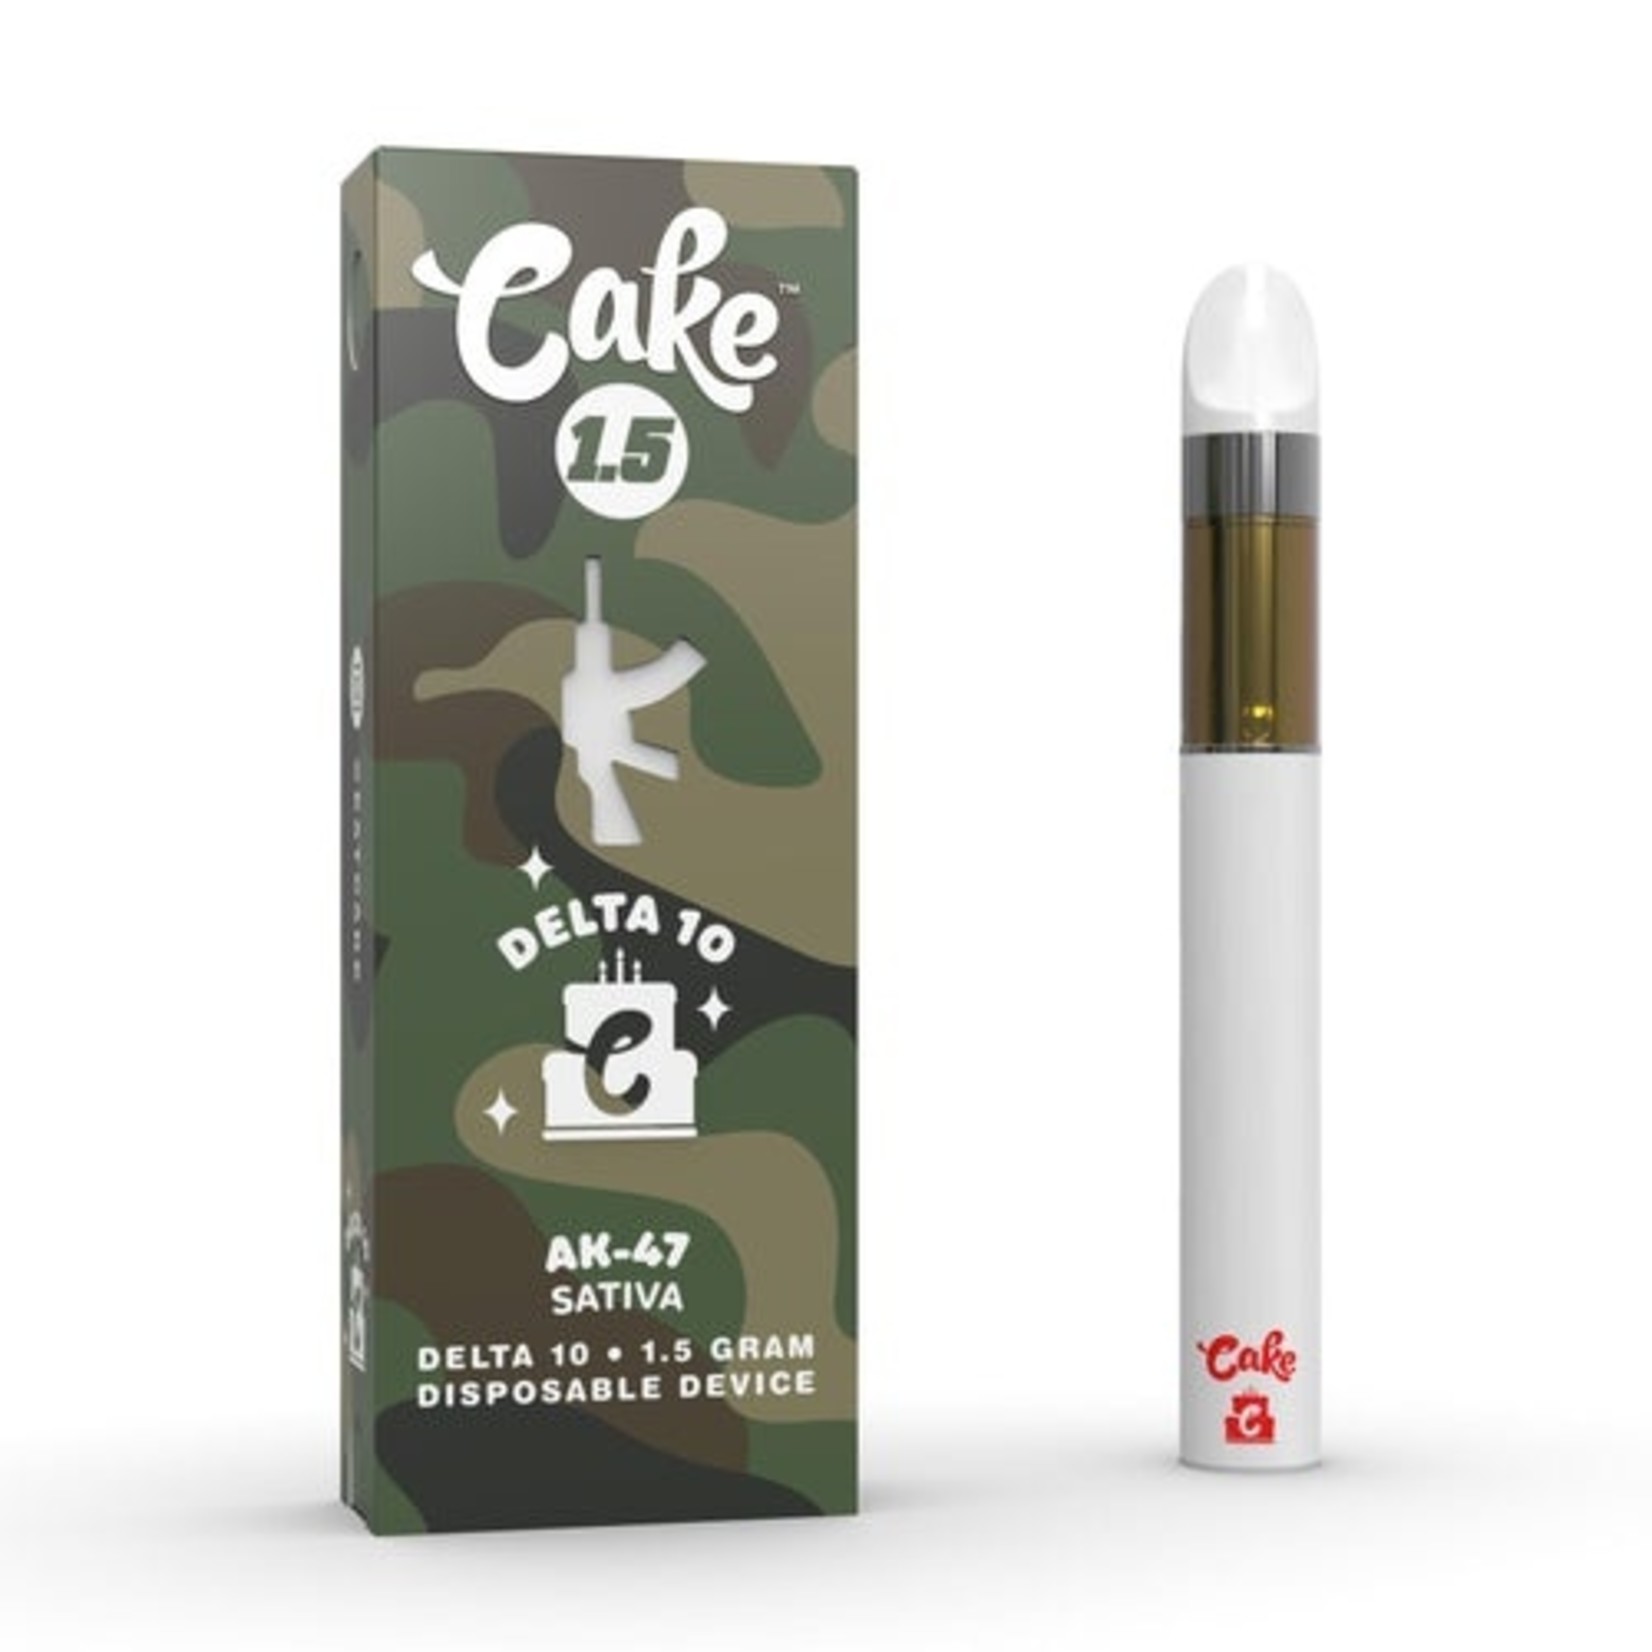 CAKE CAKE D10 DISPOSABLE 1.5 GRAM AK47